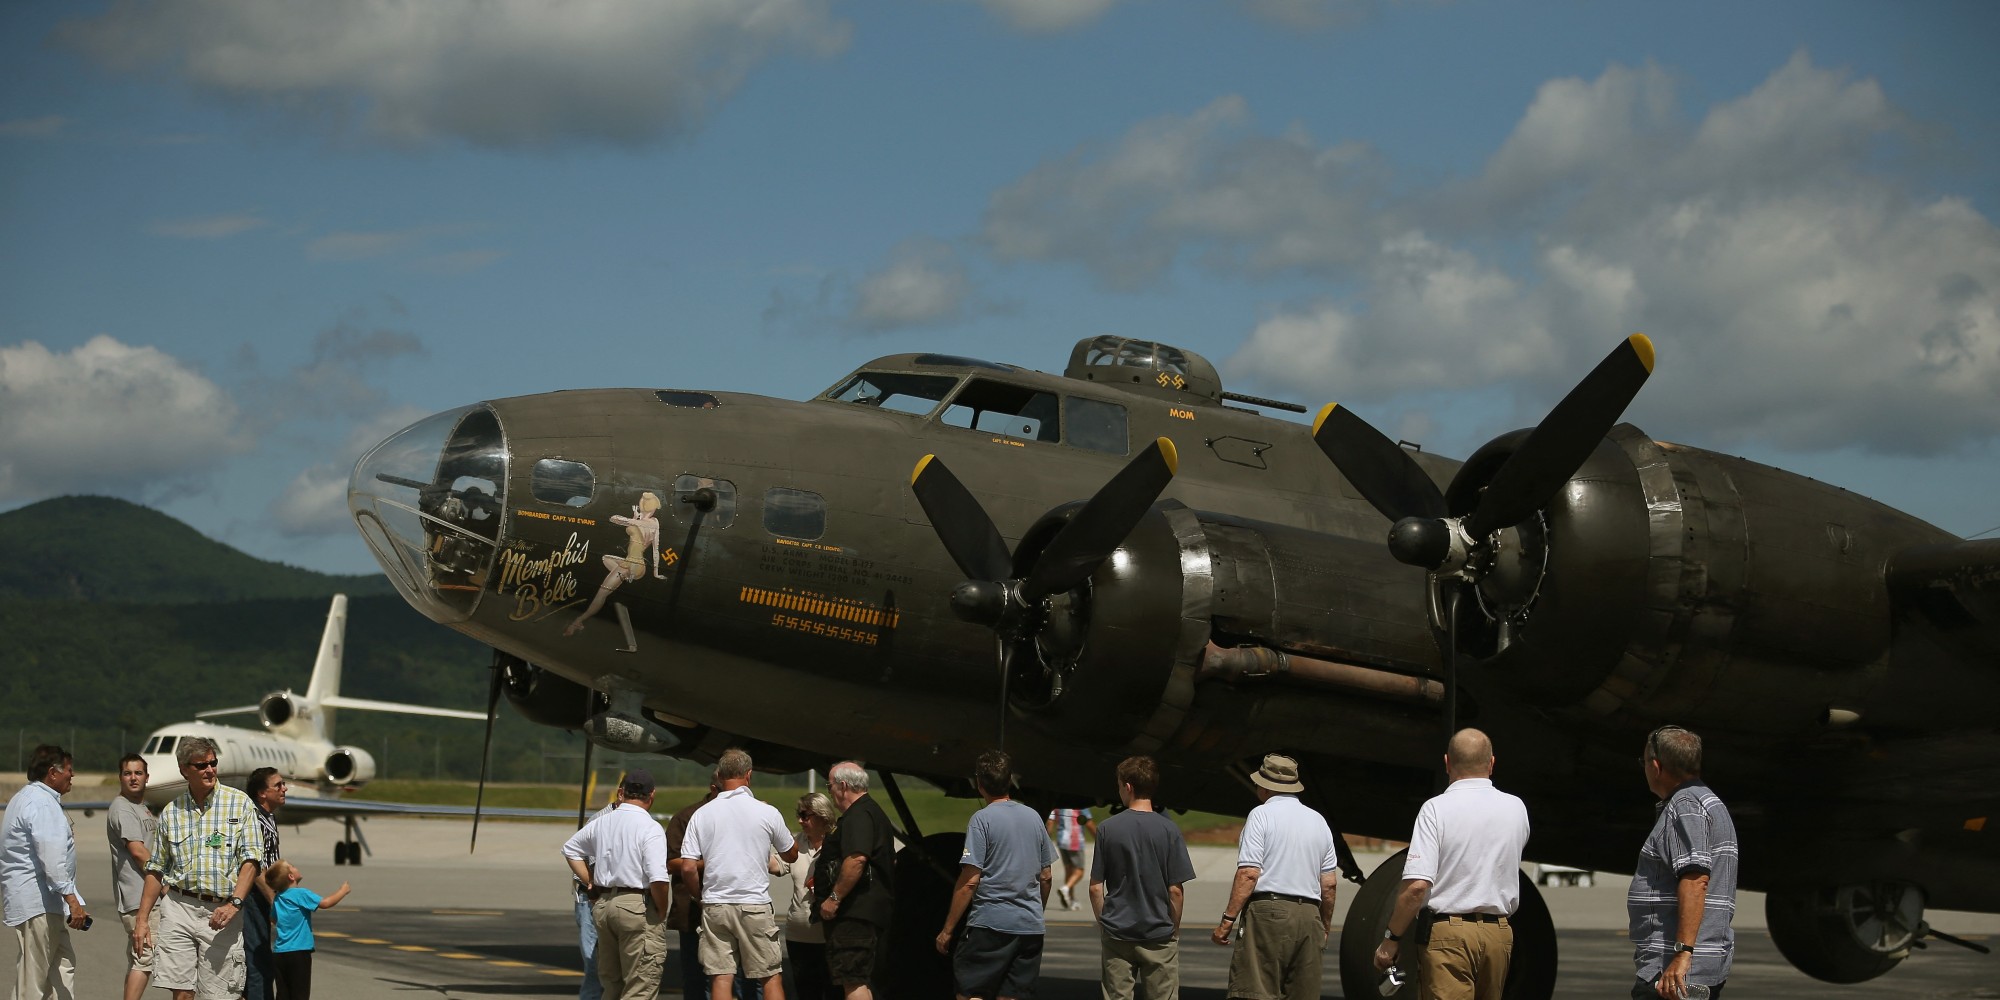 Six morts dans une collision d'avions de la Seconde guerre mondiale samedi au Texas